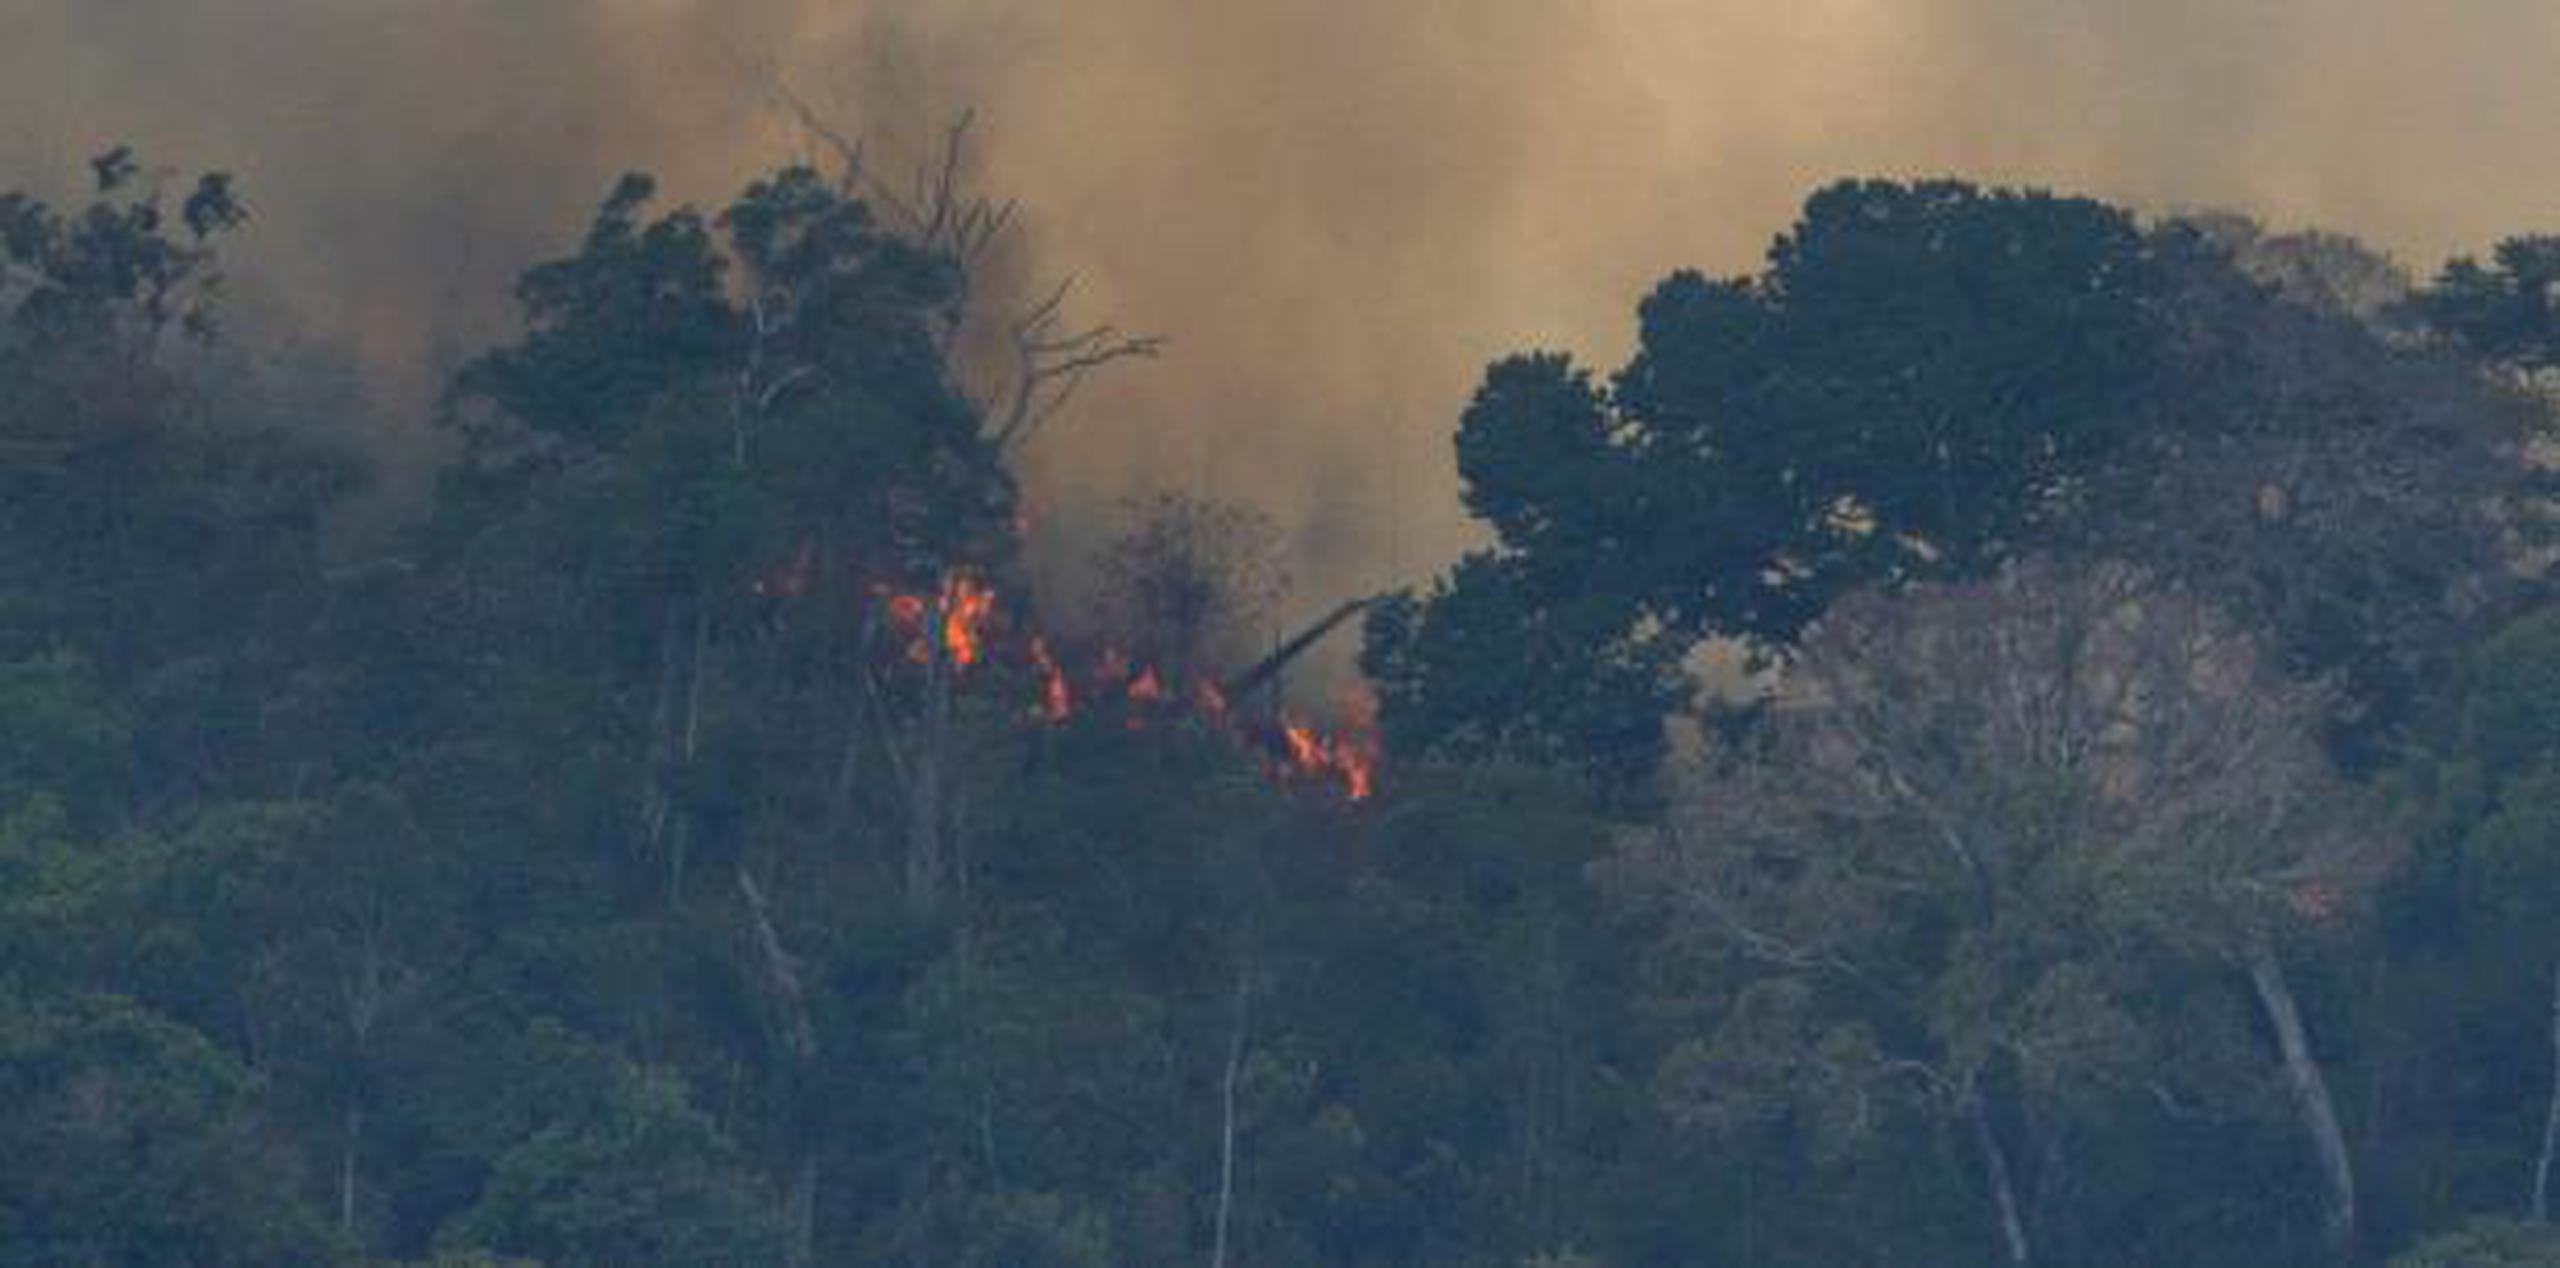 Los expertos federales brasileños reportaron una cifra récord de incendios forestales en el país sudamericano en lo que va del año, un aumento del 84% respecto al mismo periodo de 2018. (archivo)

